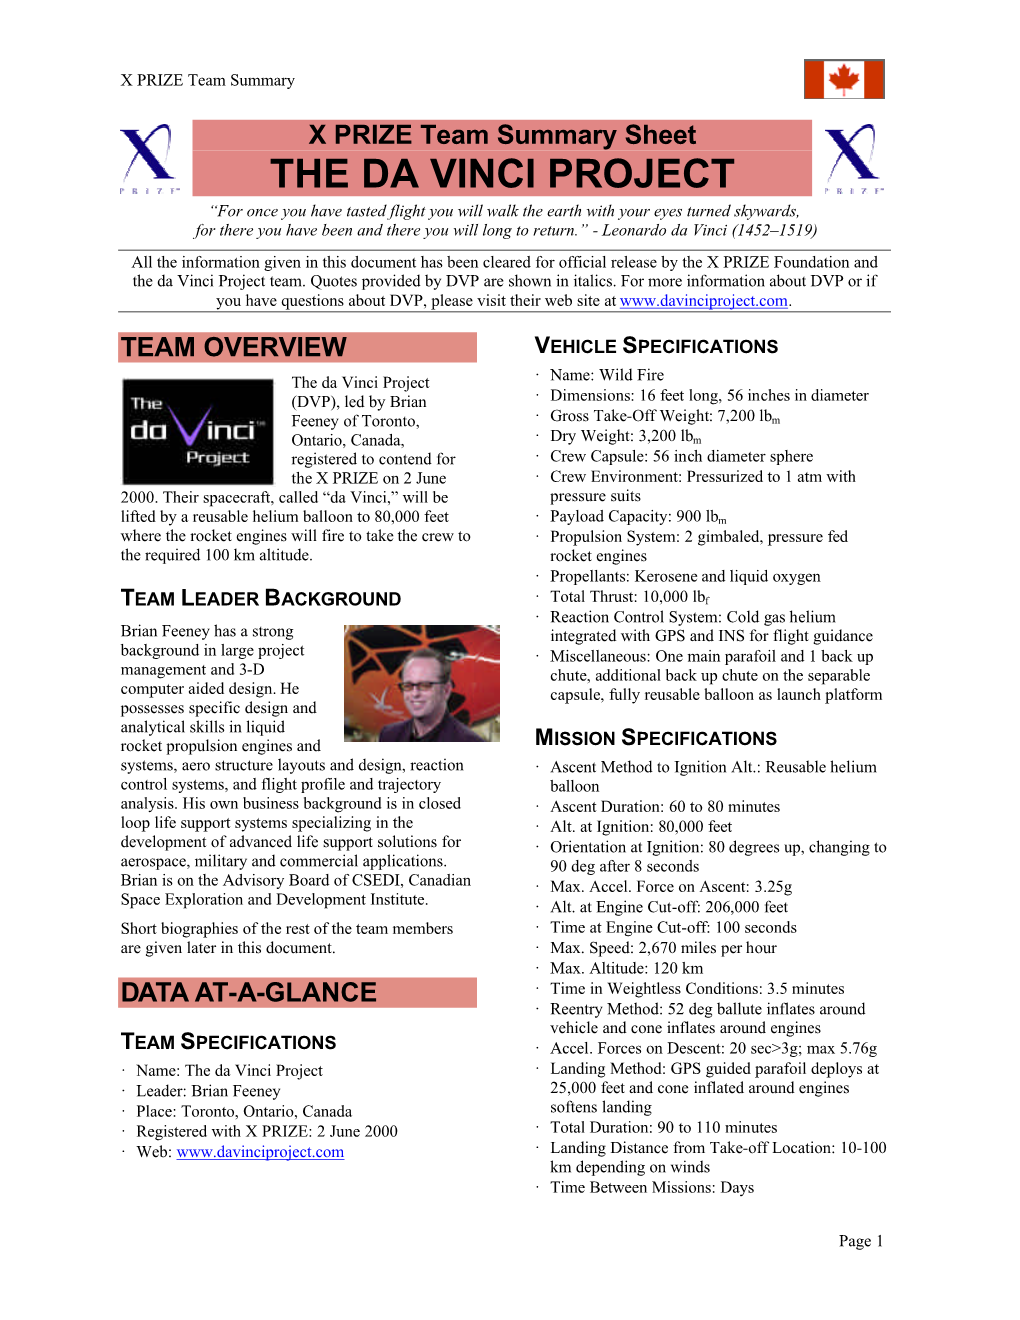 The Da Vinci Project